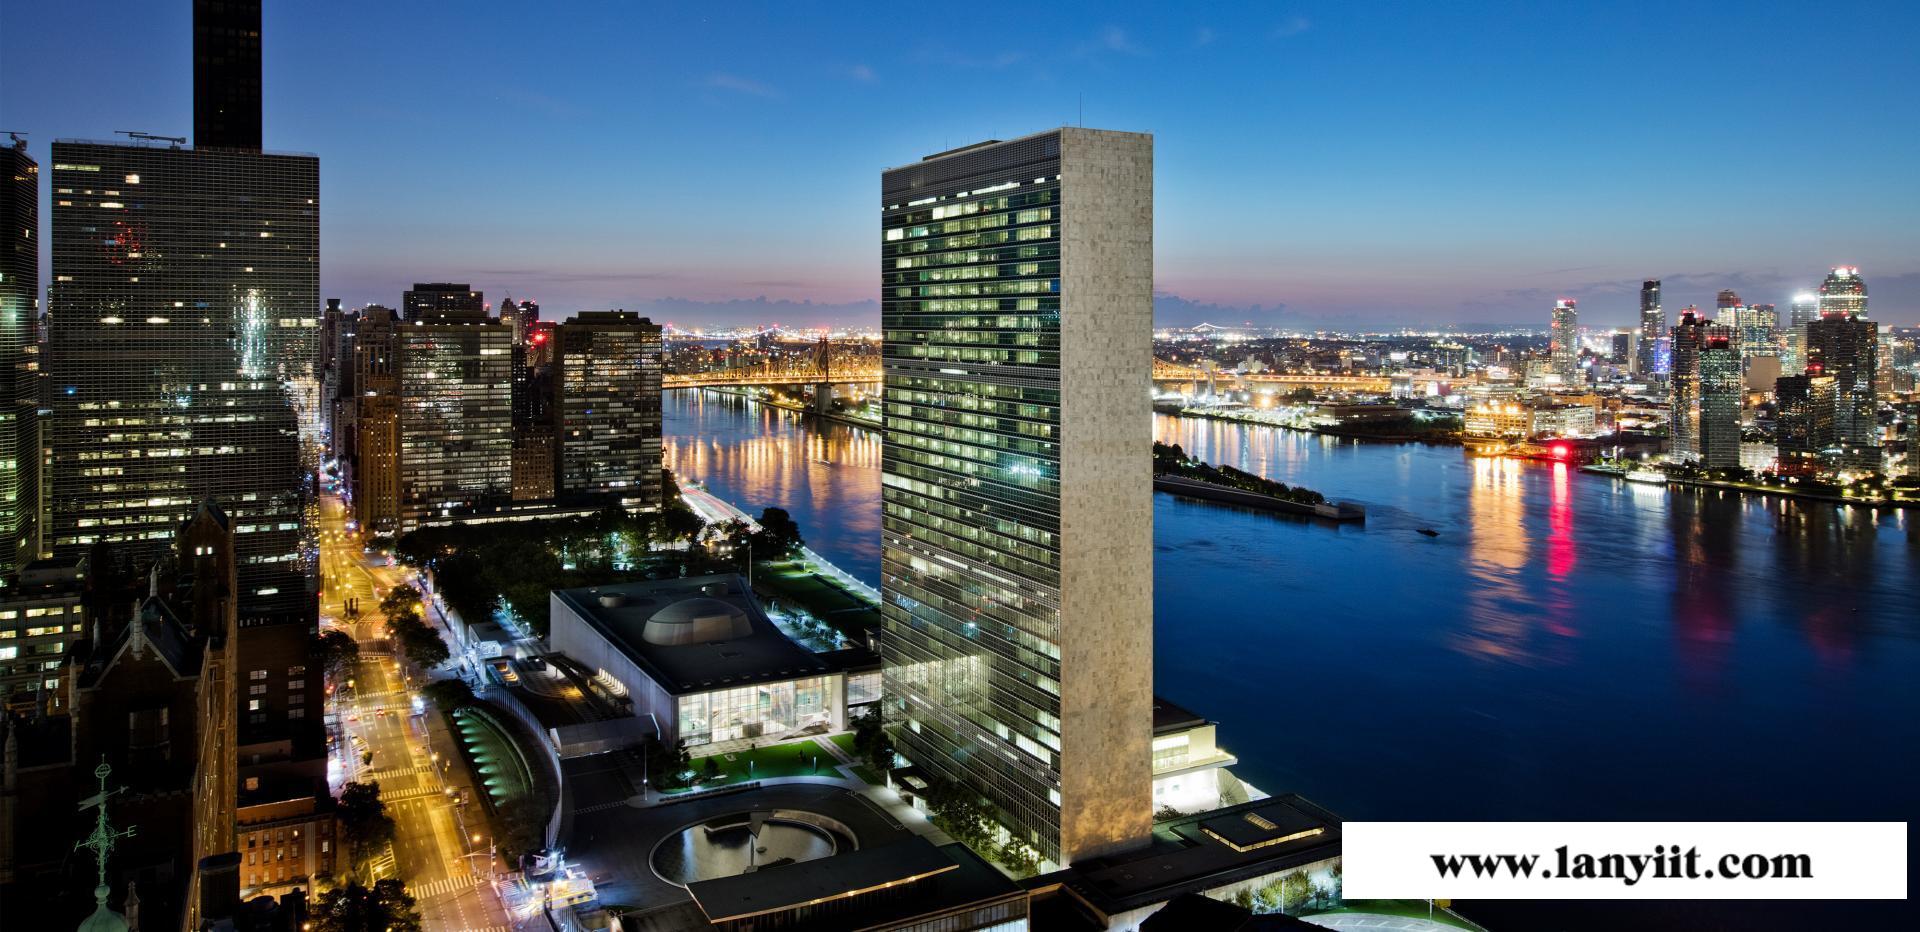 曼哈顿东高端楼盘推荐:联合国一号 全玻璃幕墙 坐享无敌河景和曼哈顿城市全景景观(图11)